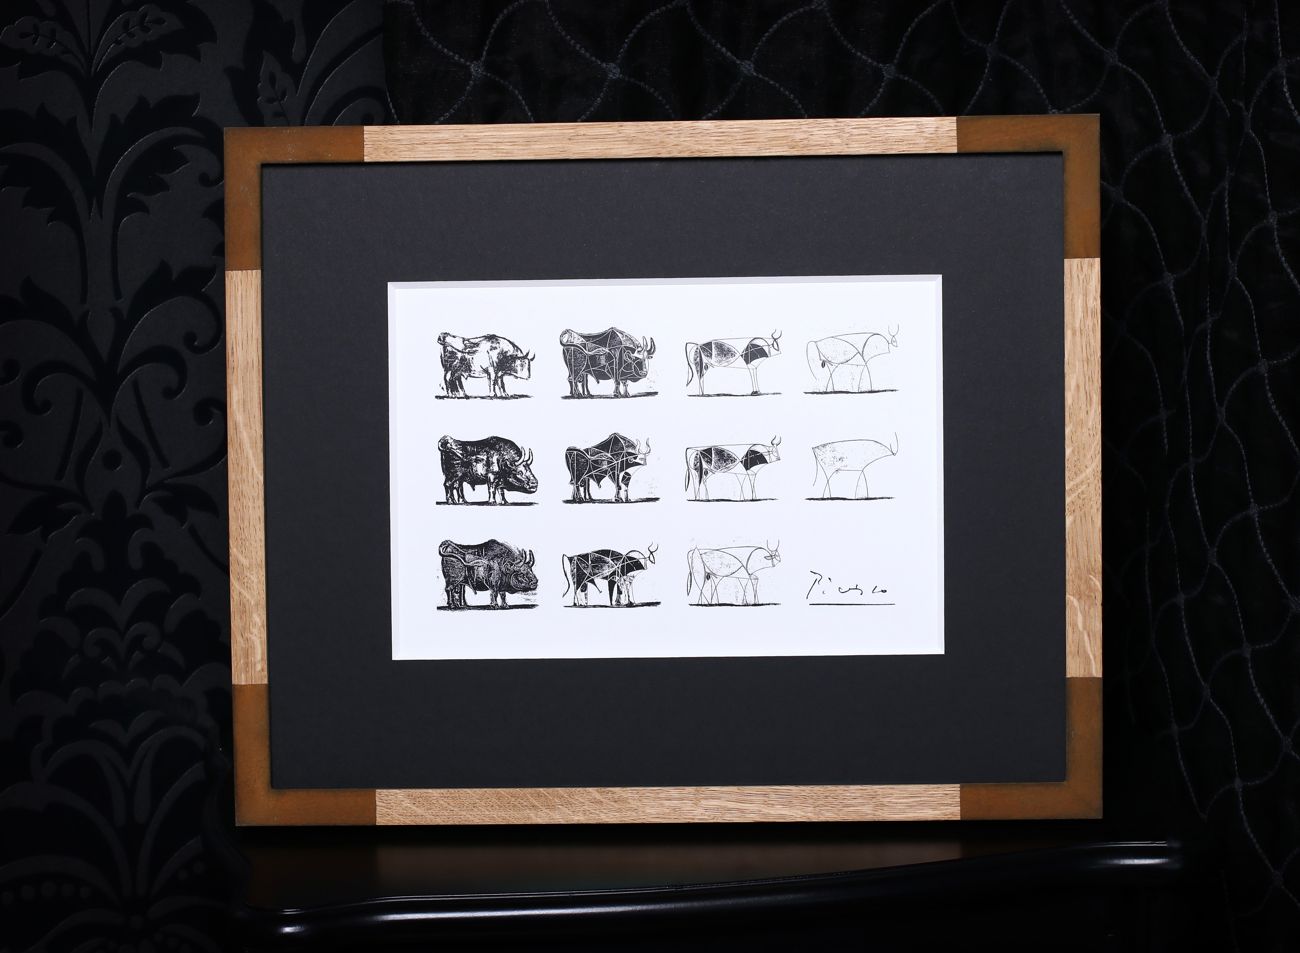 Luxusní rámování obrazu Býk Pabla Picassa do modelového dubového rámu s rohy z pravé rzi | © Frame-it.cz